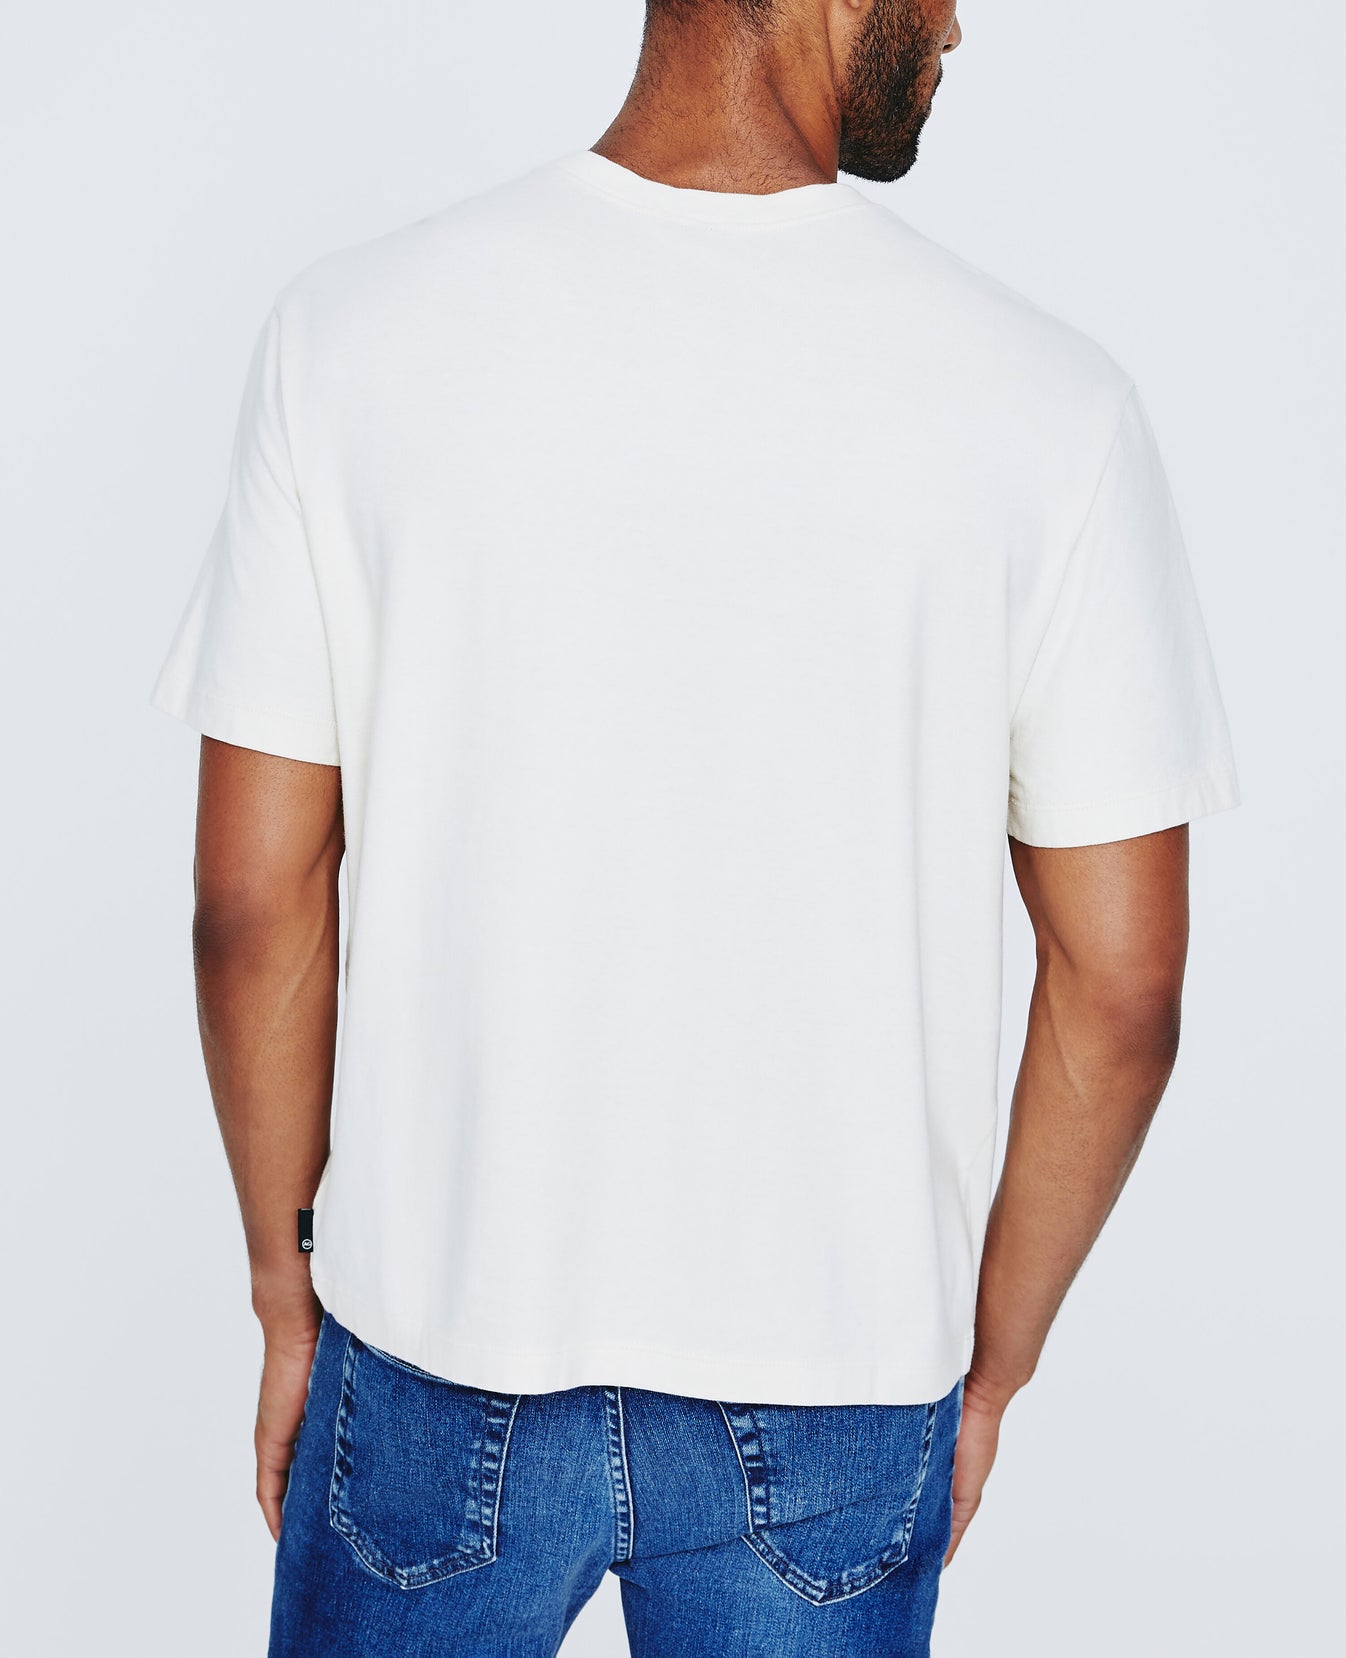 Arc Tee White Cream Oversized T-Shirt Men Tops Photo 6